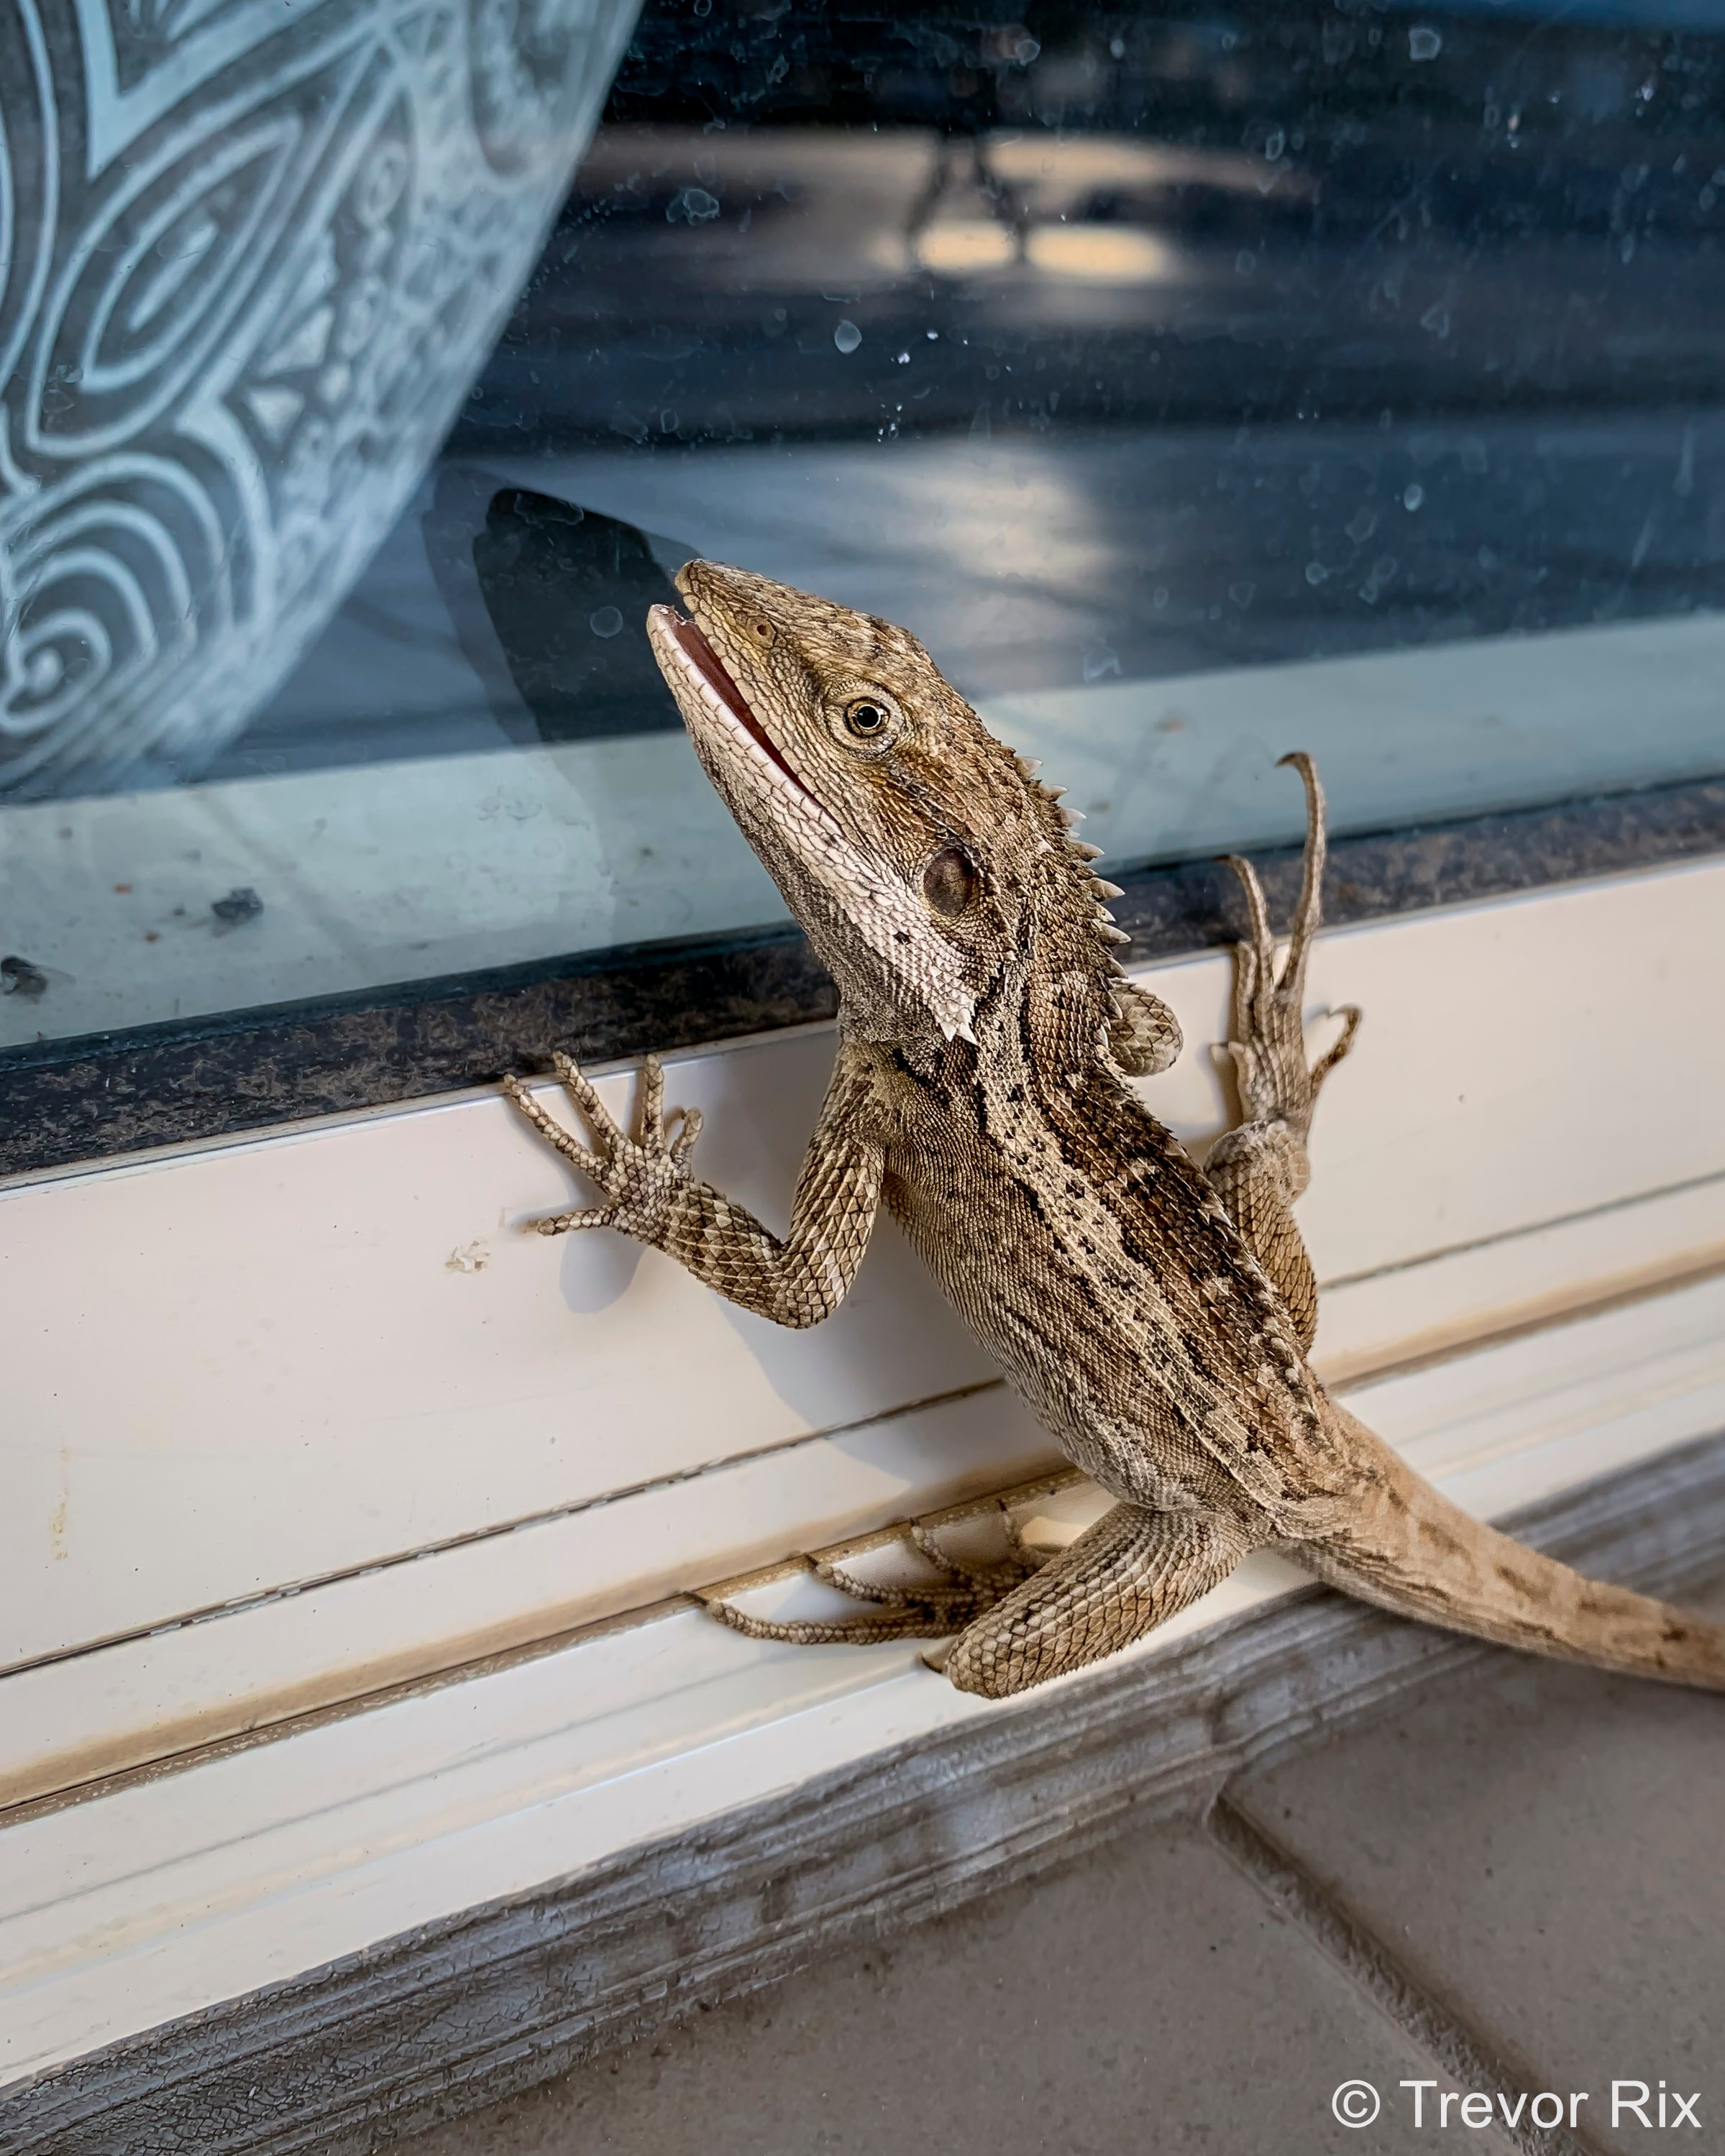 A lizard climbing on a window